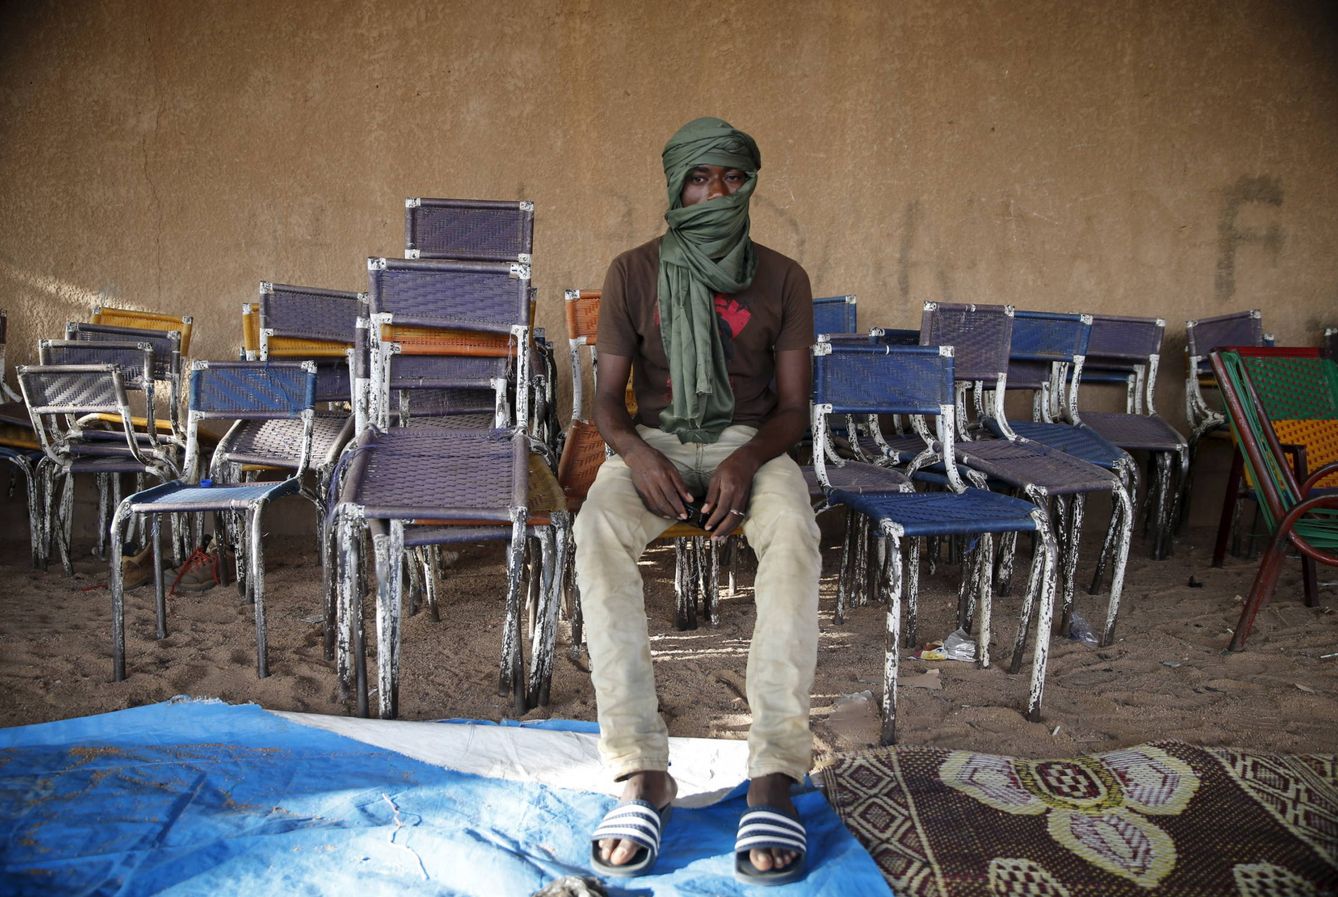 Migrant Nassirou, migrante nigeriano de 19 años, posa para una fotografía en Agadez. (Reuters)